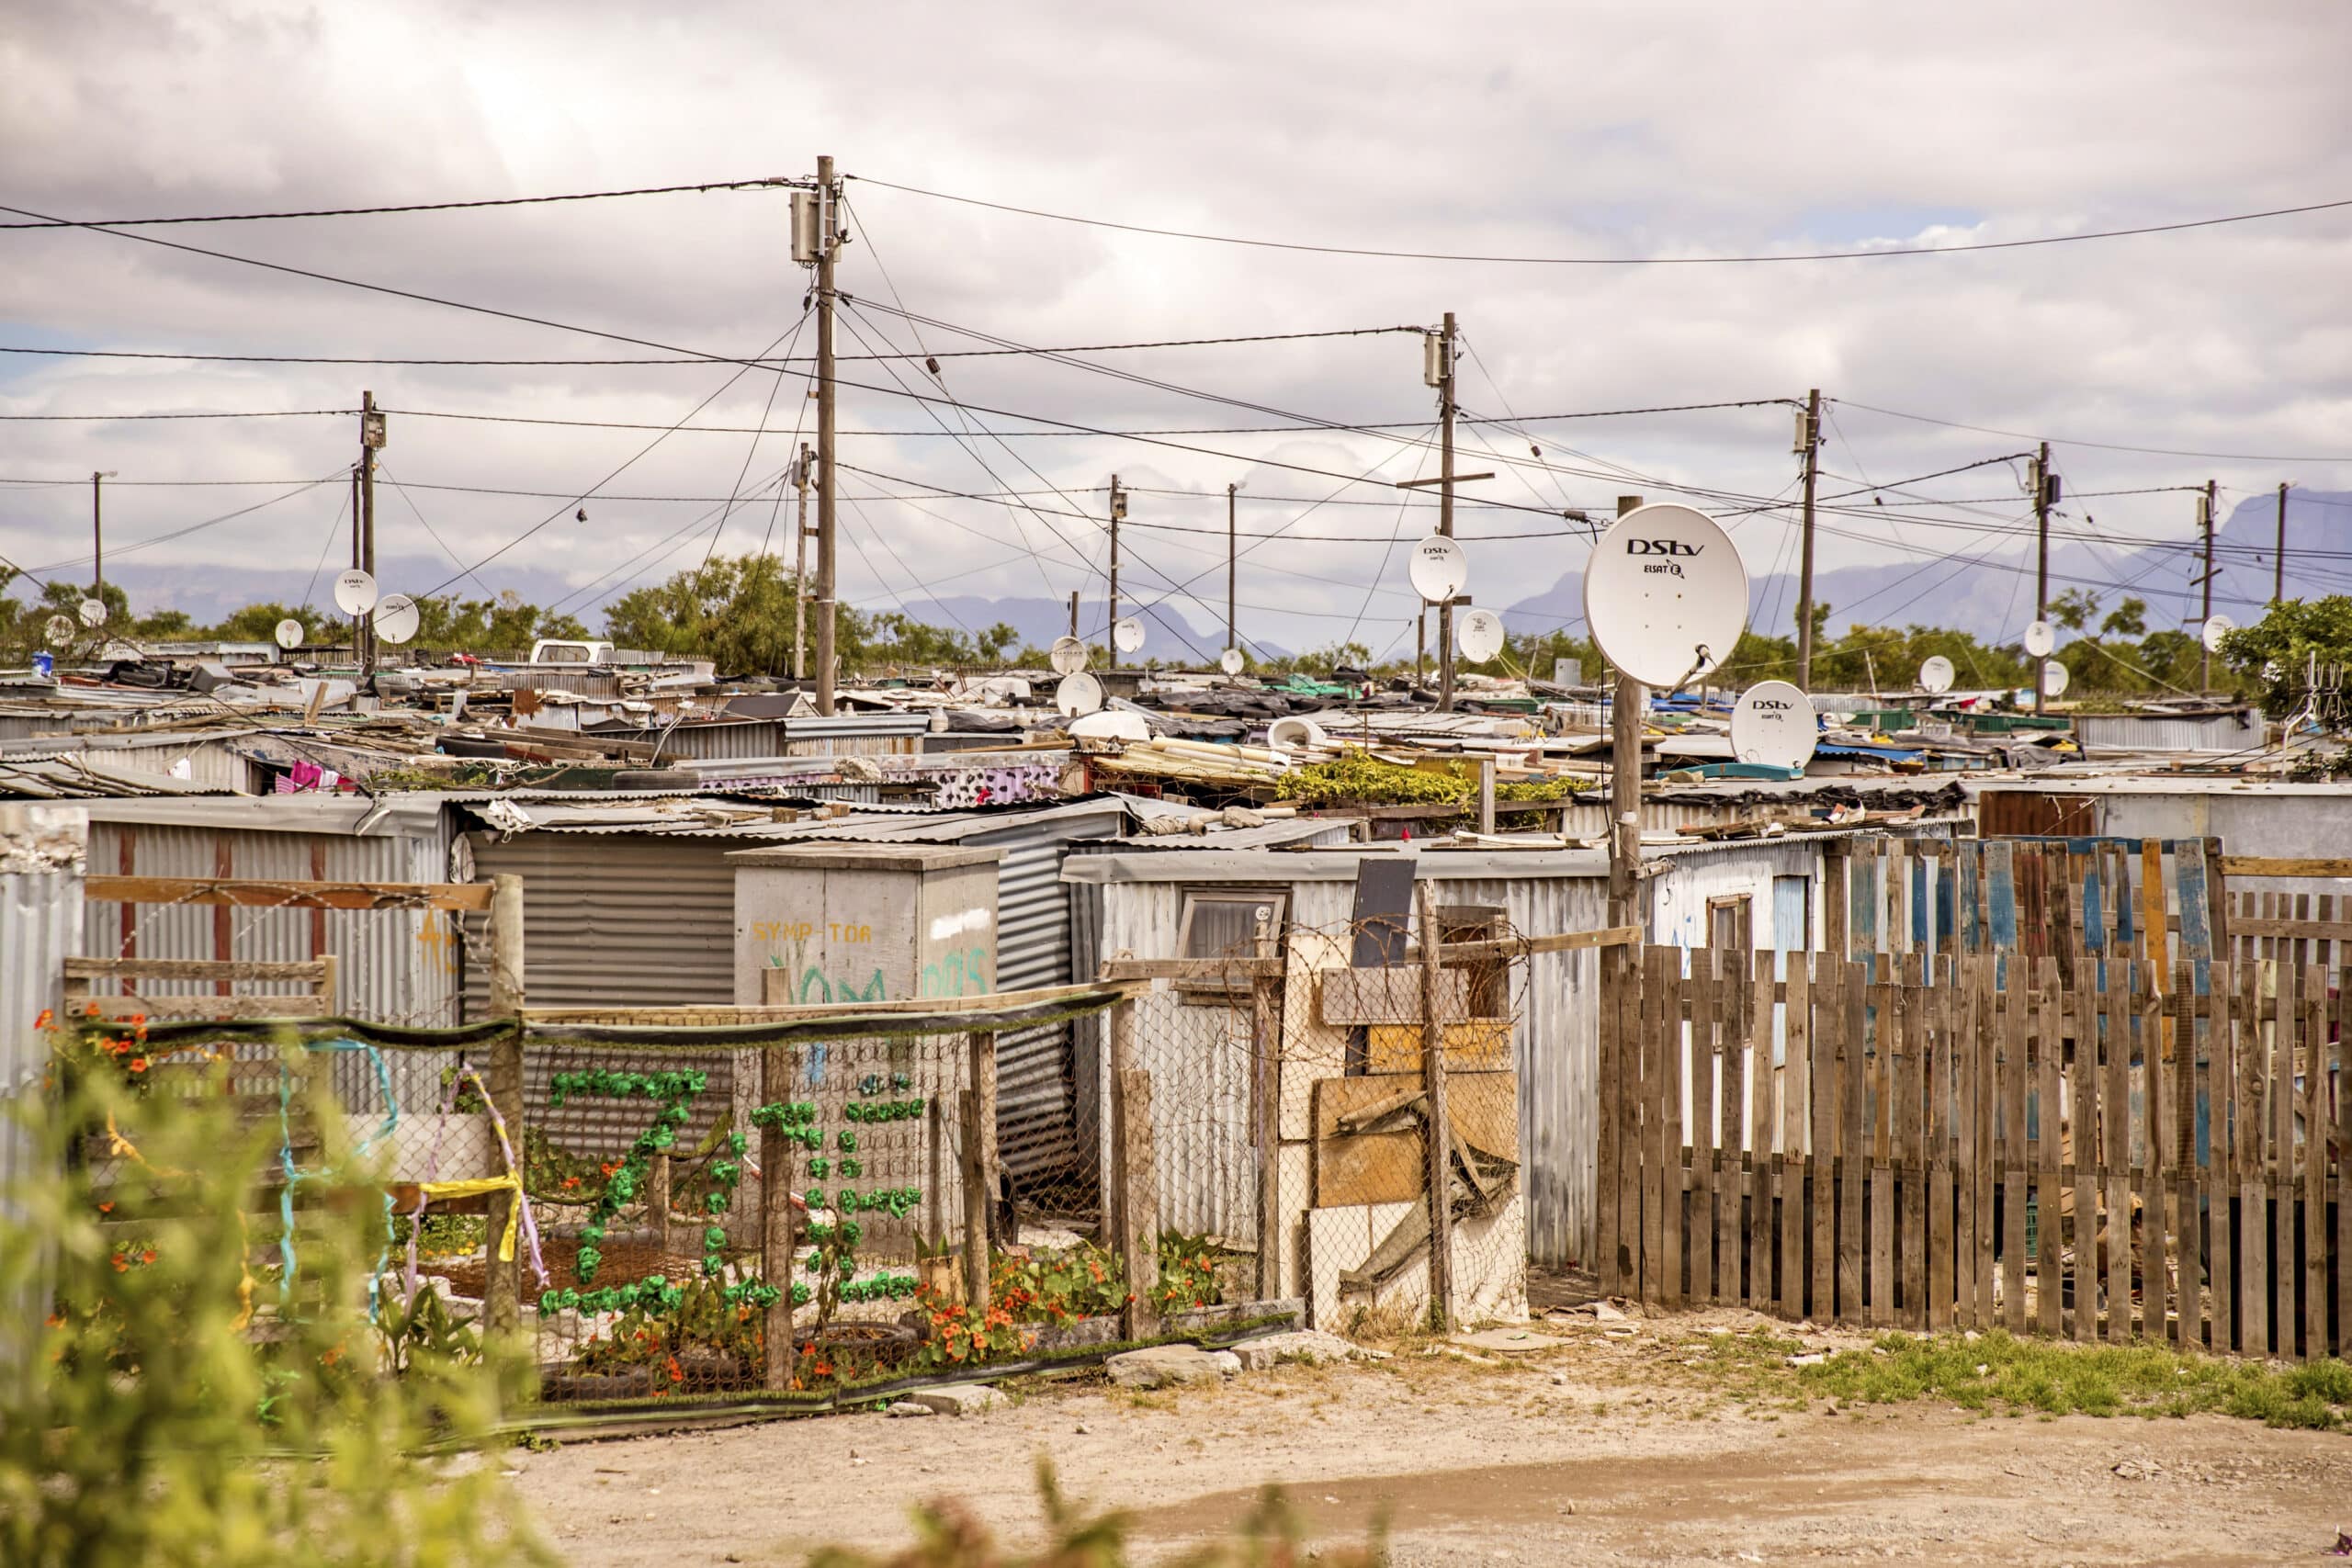 Eine provisorische Siedlung mit dicht gedrängten Hütten mit Wellblechdächern, umgeben von Zäunen; viele Satellitenschüsseln sind vor einem bewölkten Himmel sichtbar. © Fotografie Tomas Rodriguez